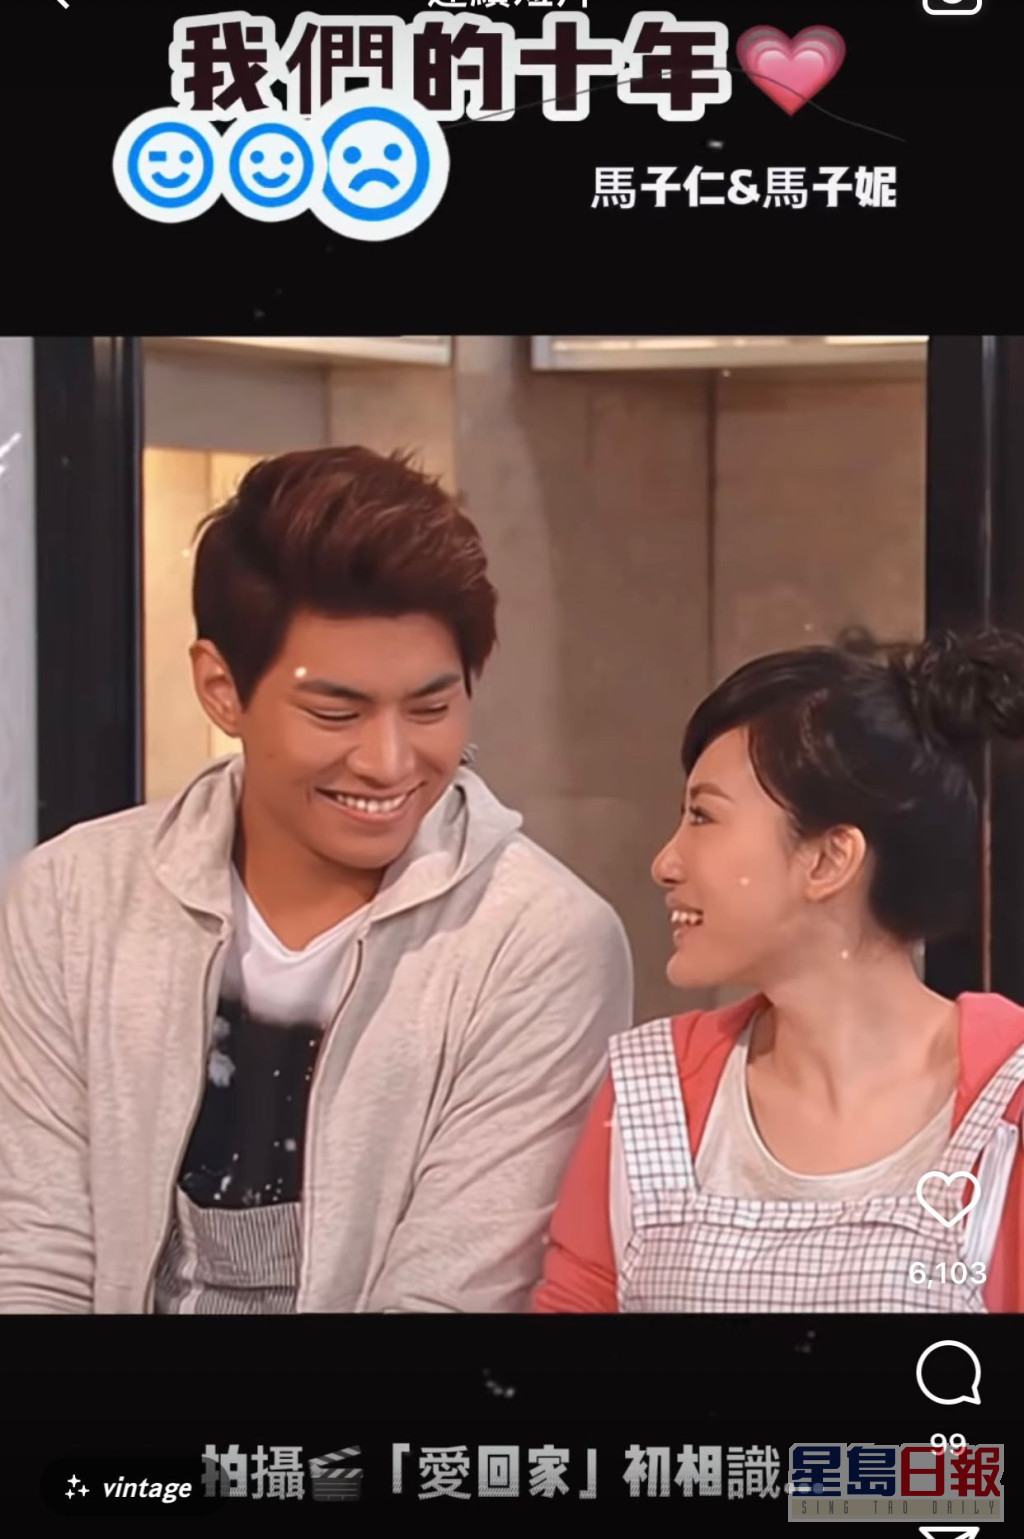 罗天宇和蒋家旻在《爱．回家》中饰演马子仁和马子妮两兄妹。